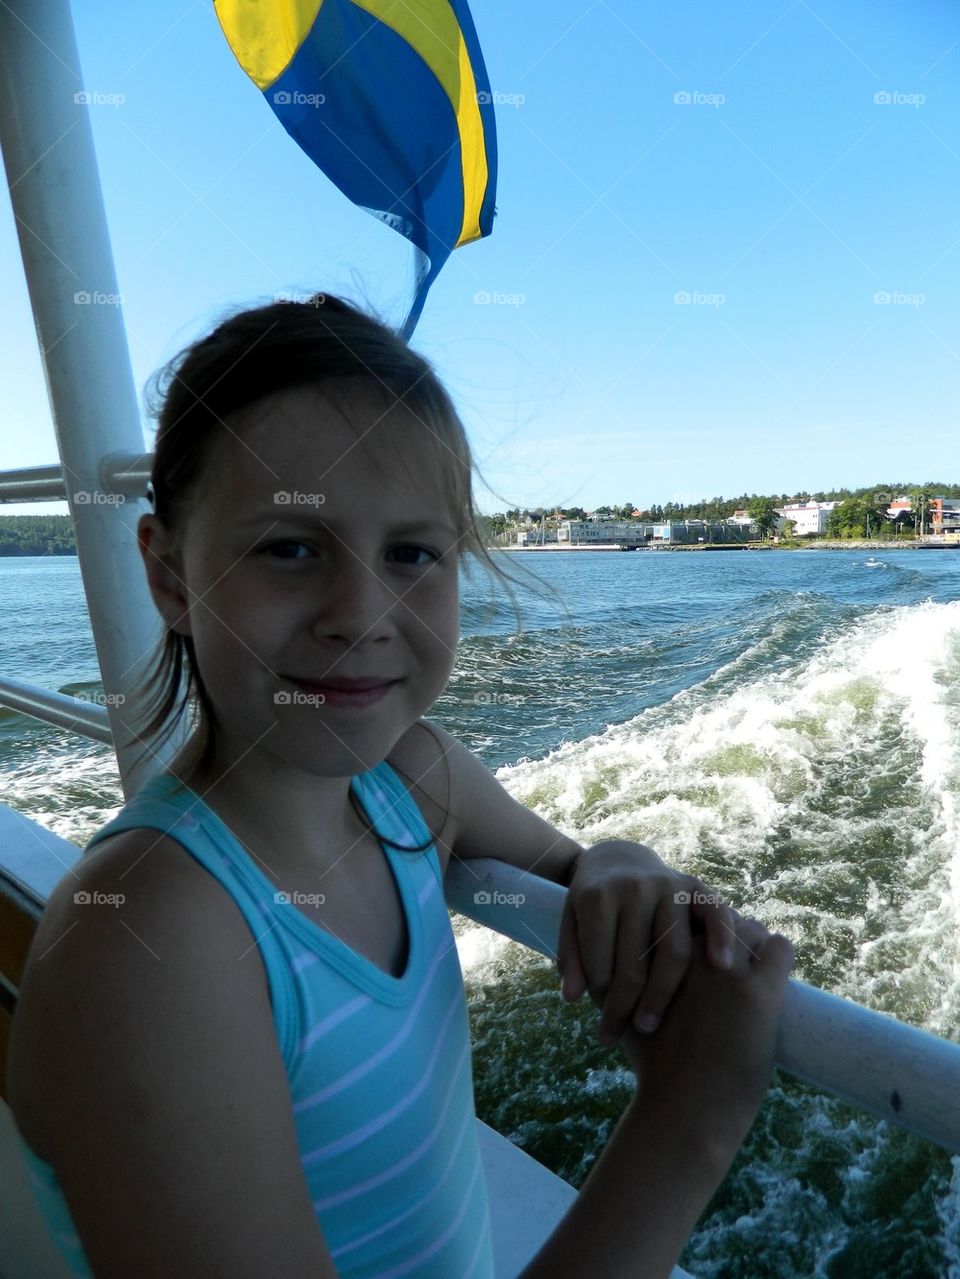 Boat trip in Sweden 